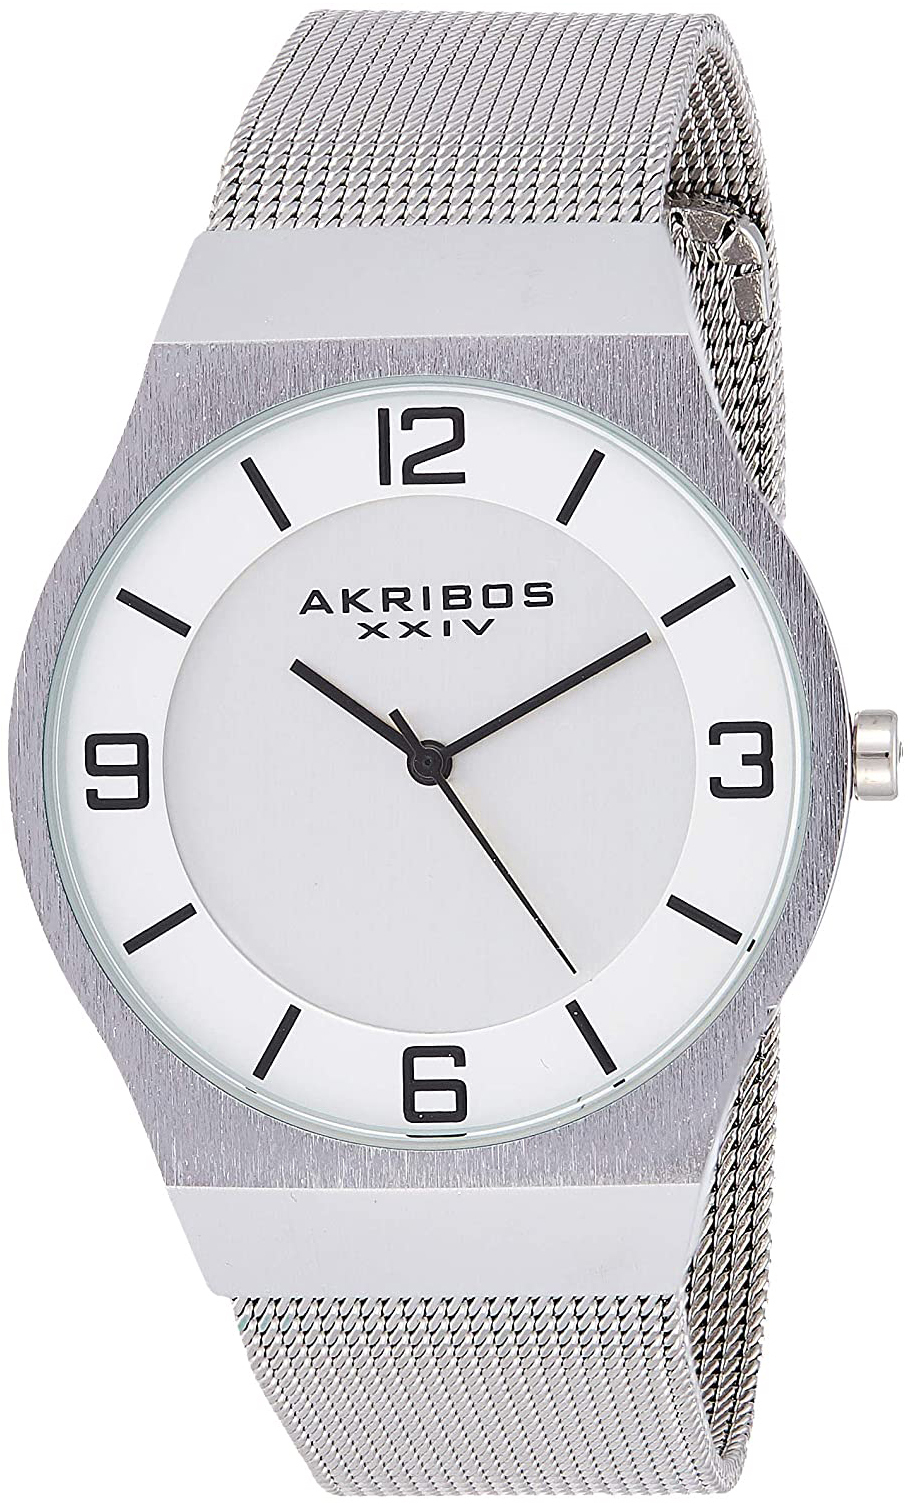 Akribos XXIV 99999 Herrklocka AK851SS Silverfärgad/Stål Ø40 mm